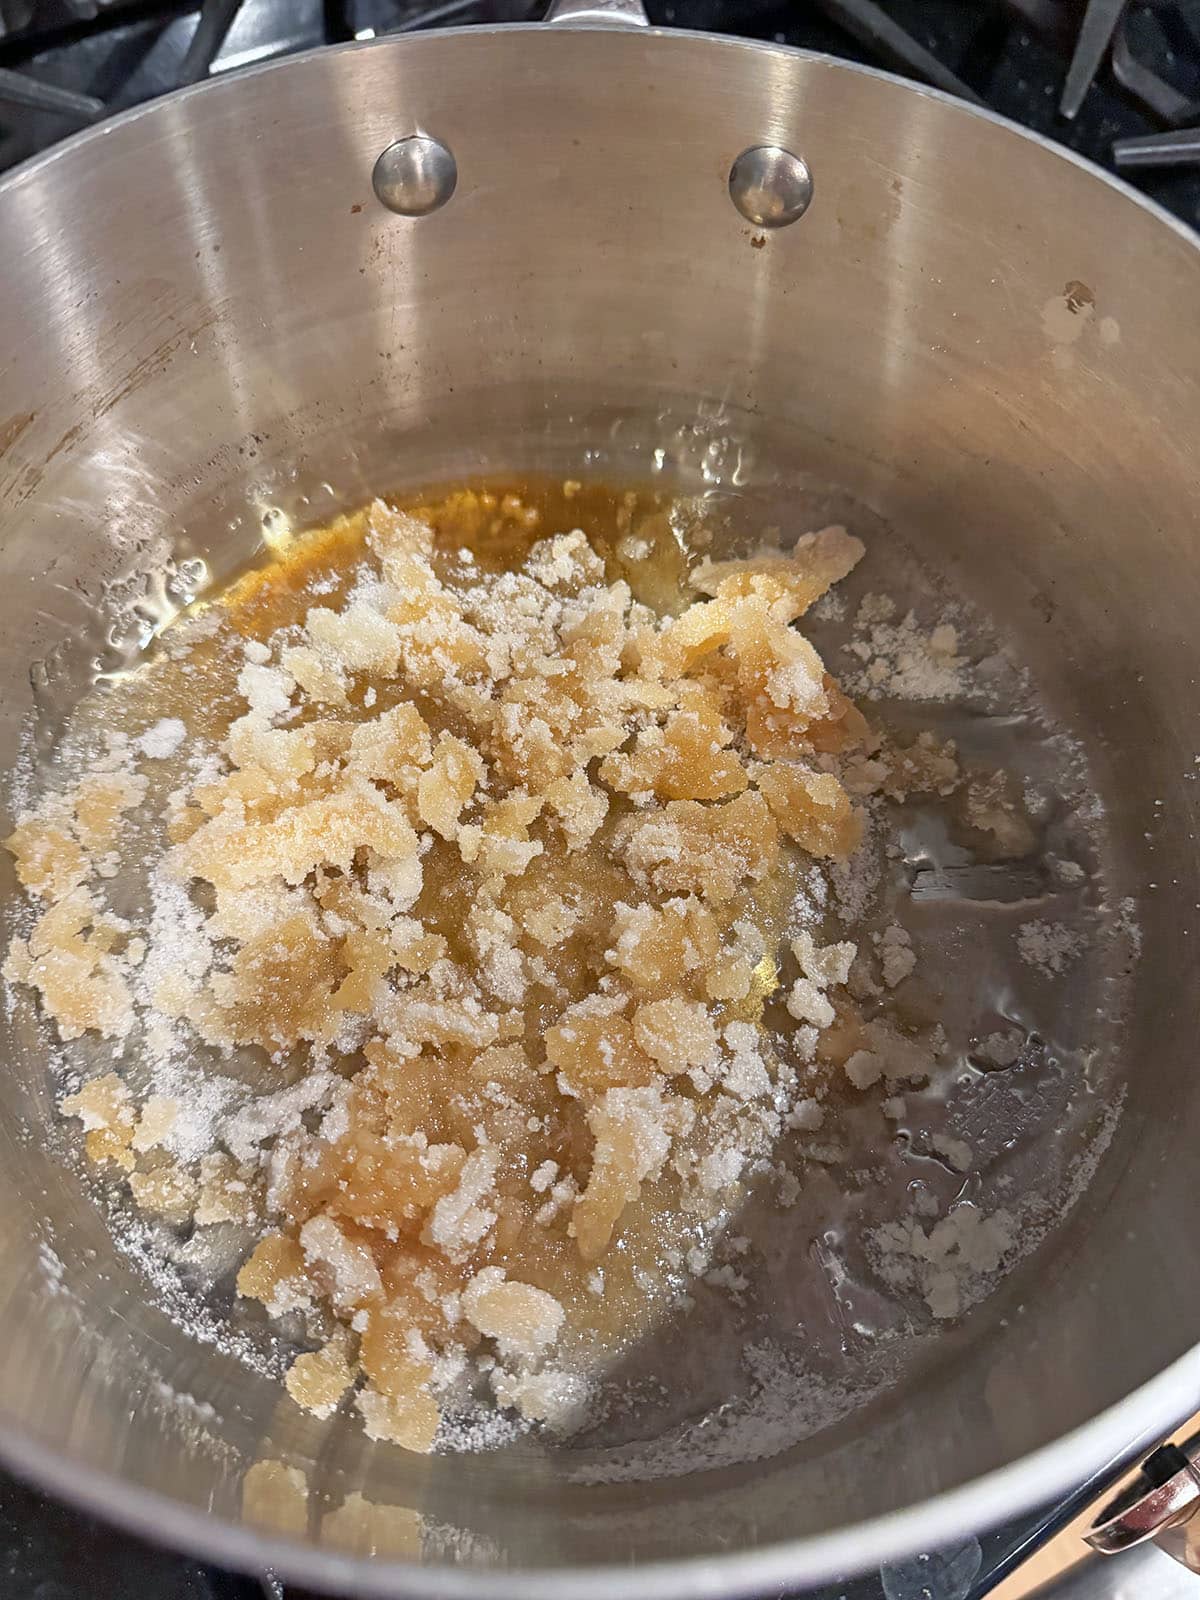 Sugar browning in saucepan.